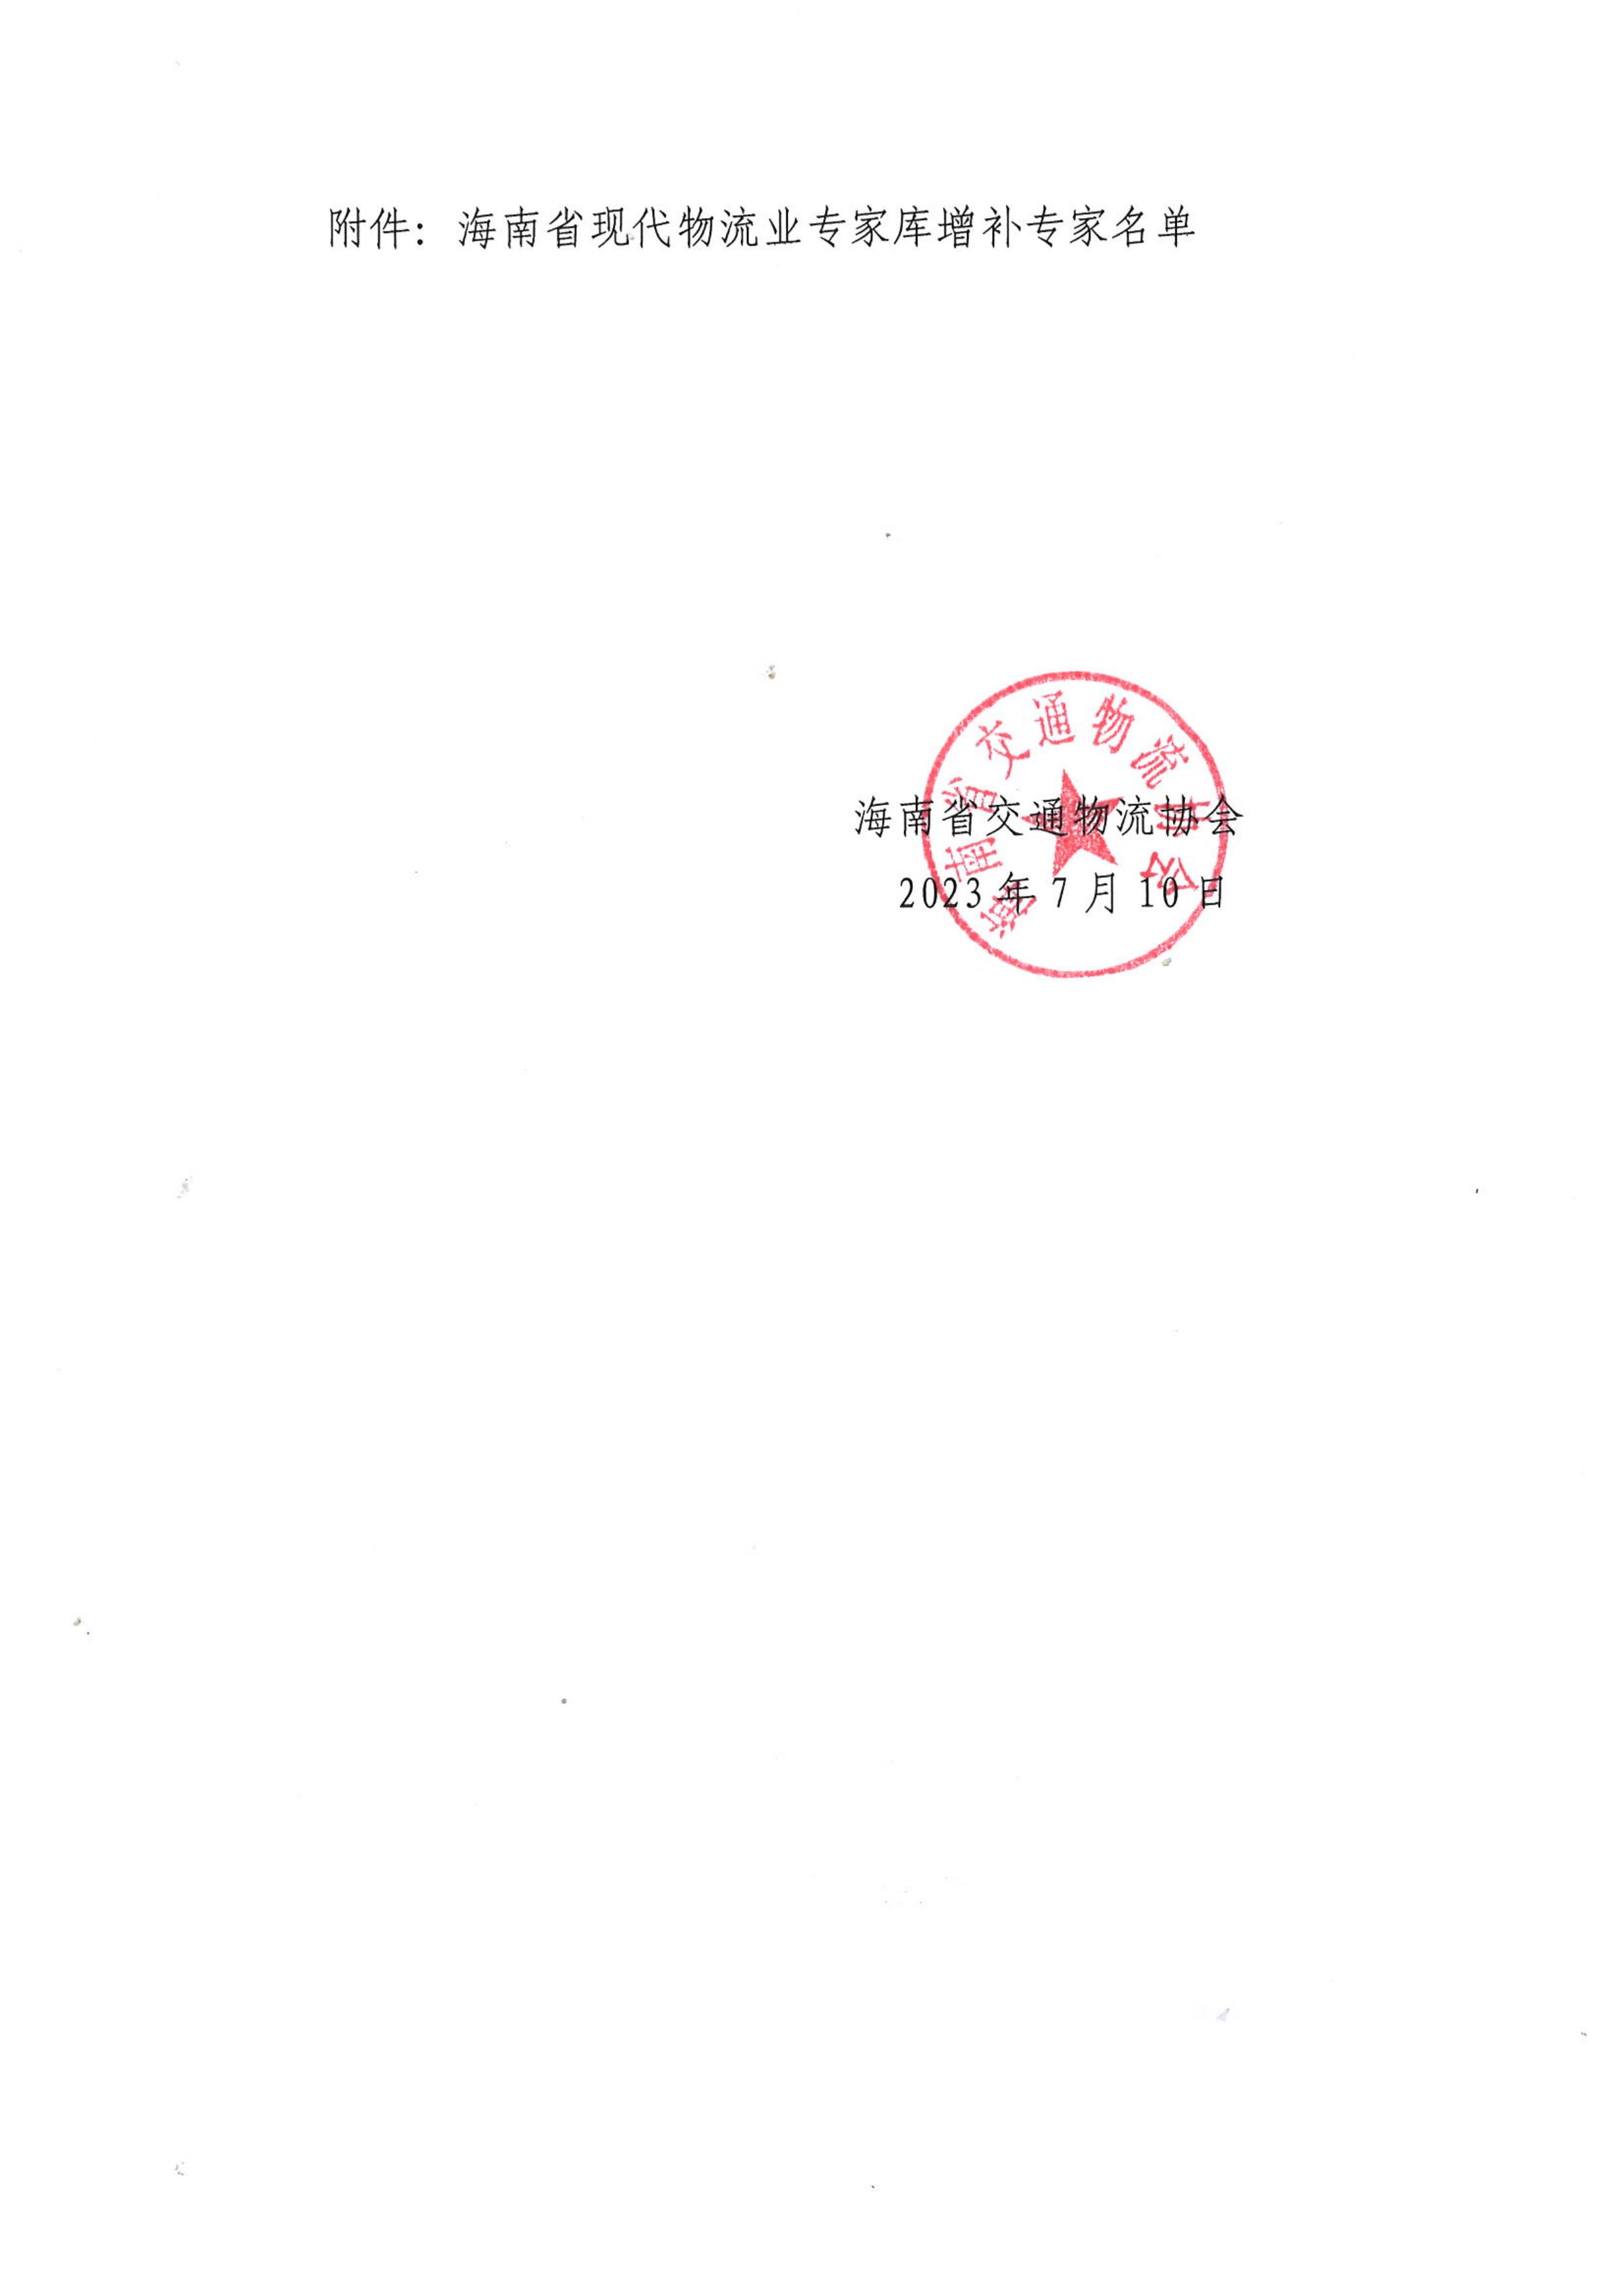 关于公布海南省现代物流业专家库增补专家名单的通知_01.jpg